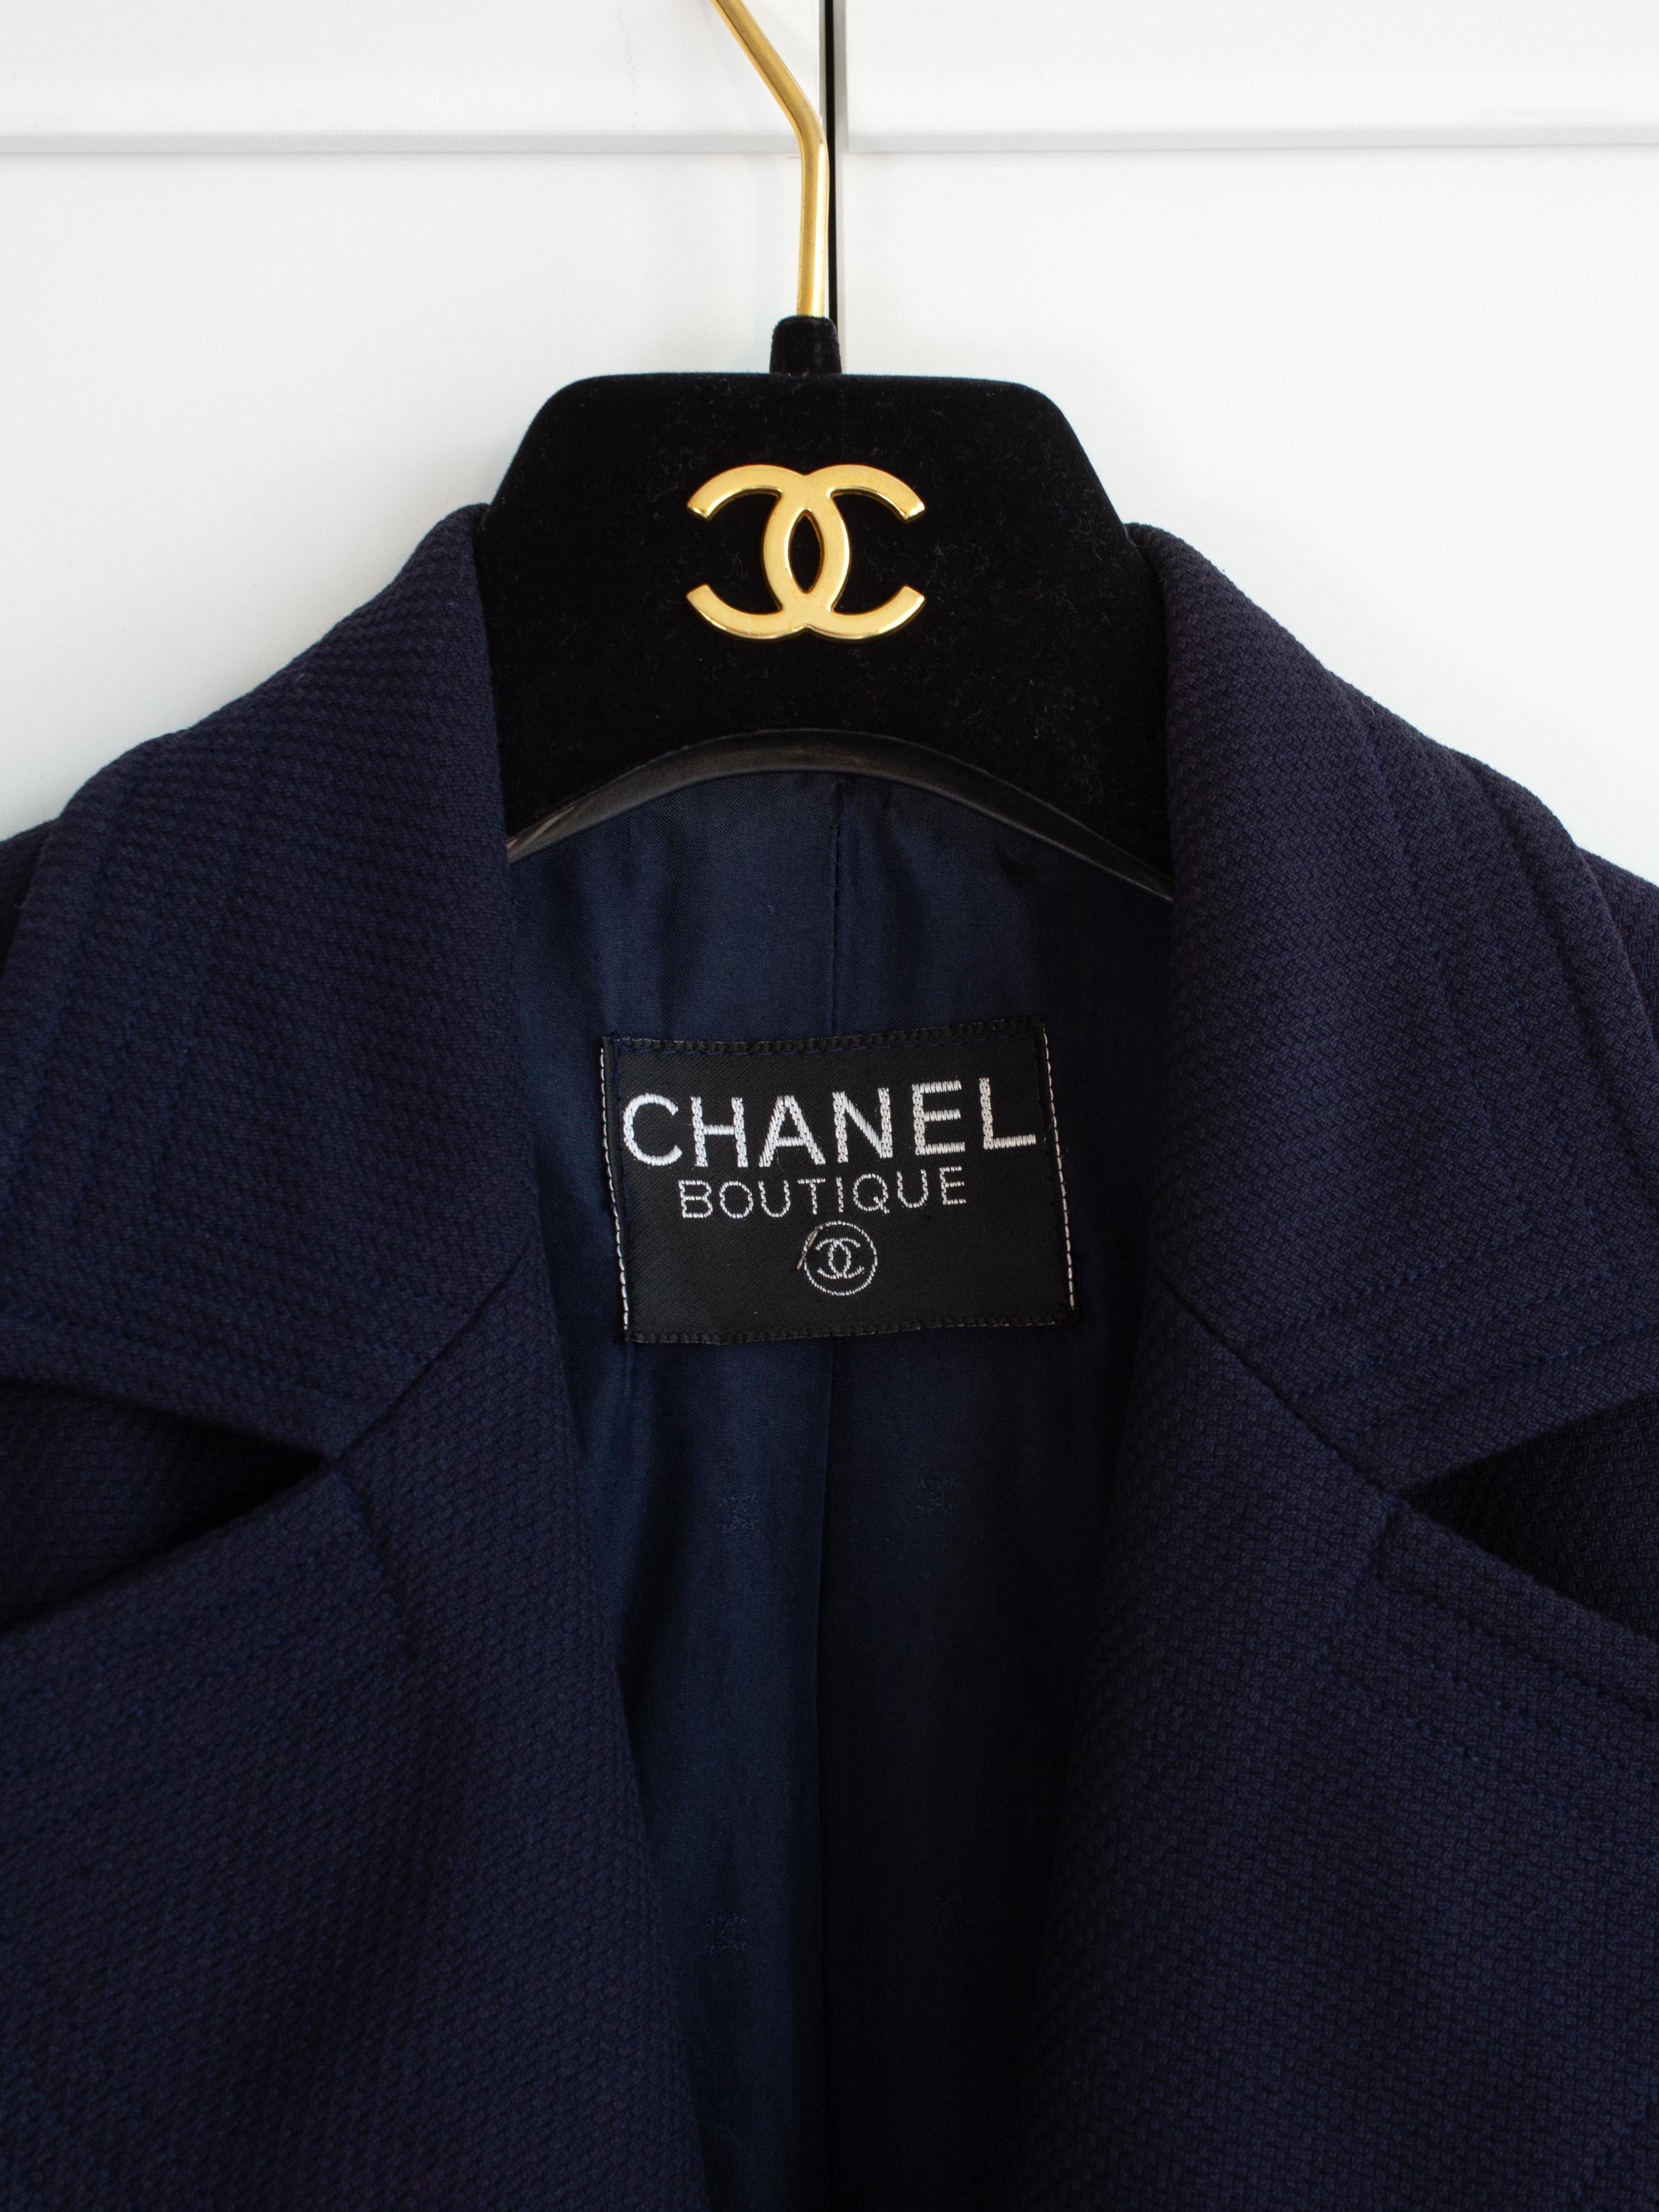 Chanel Vintage S/S1993 Navy Blue Cotton Gold Chain CC Medallion 93P Jacket Suit 2